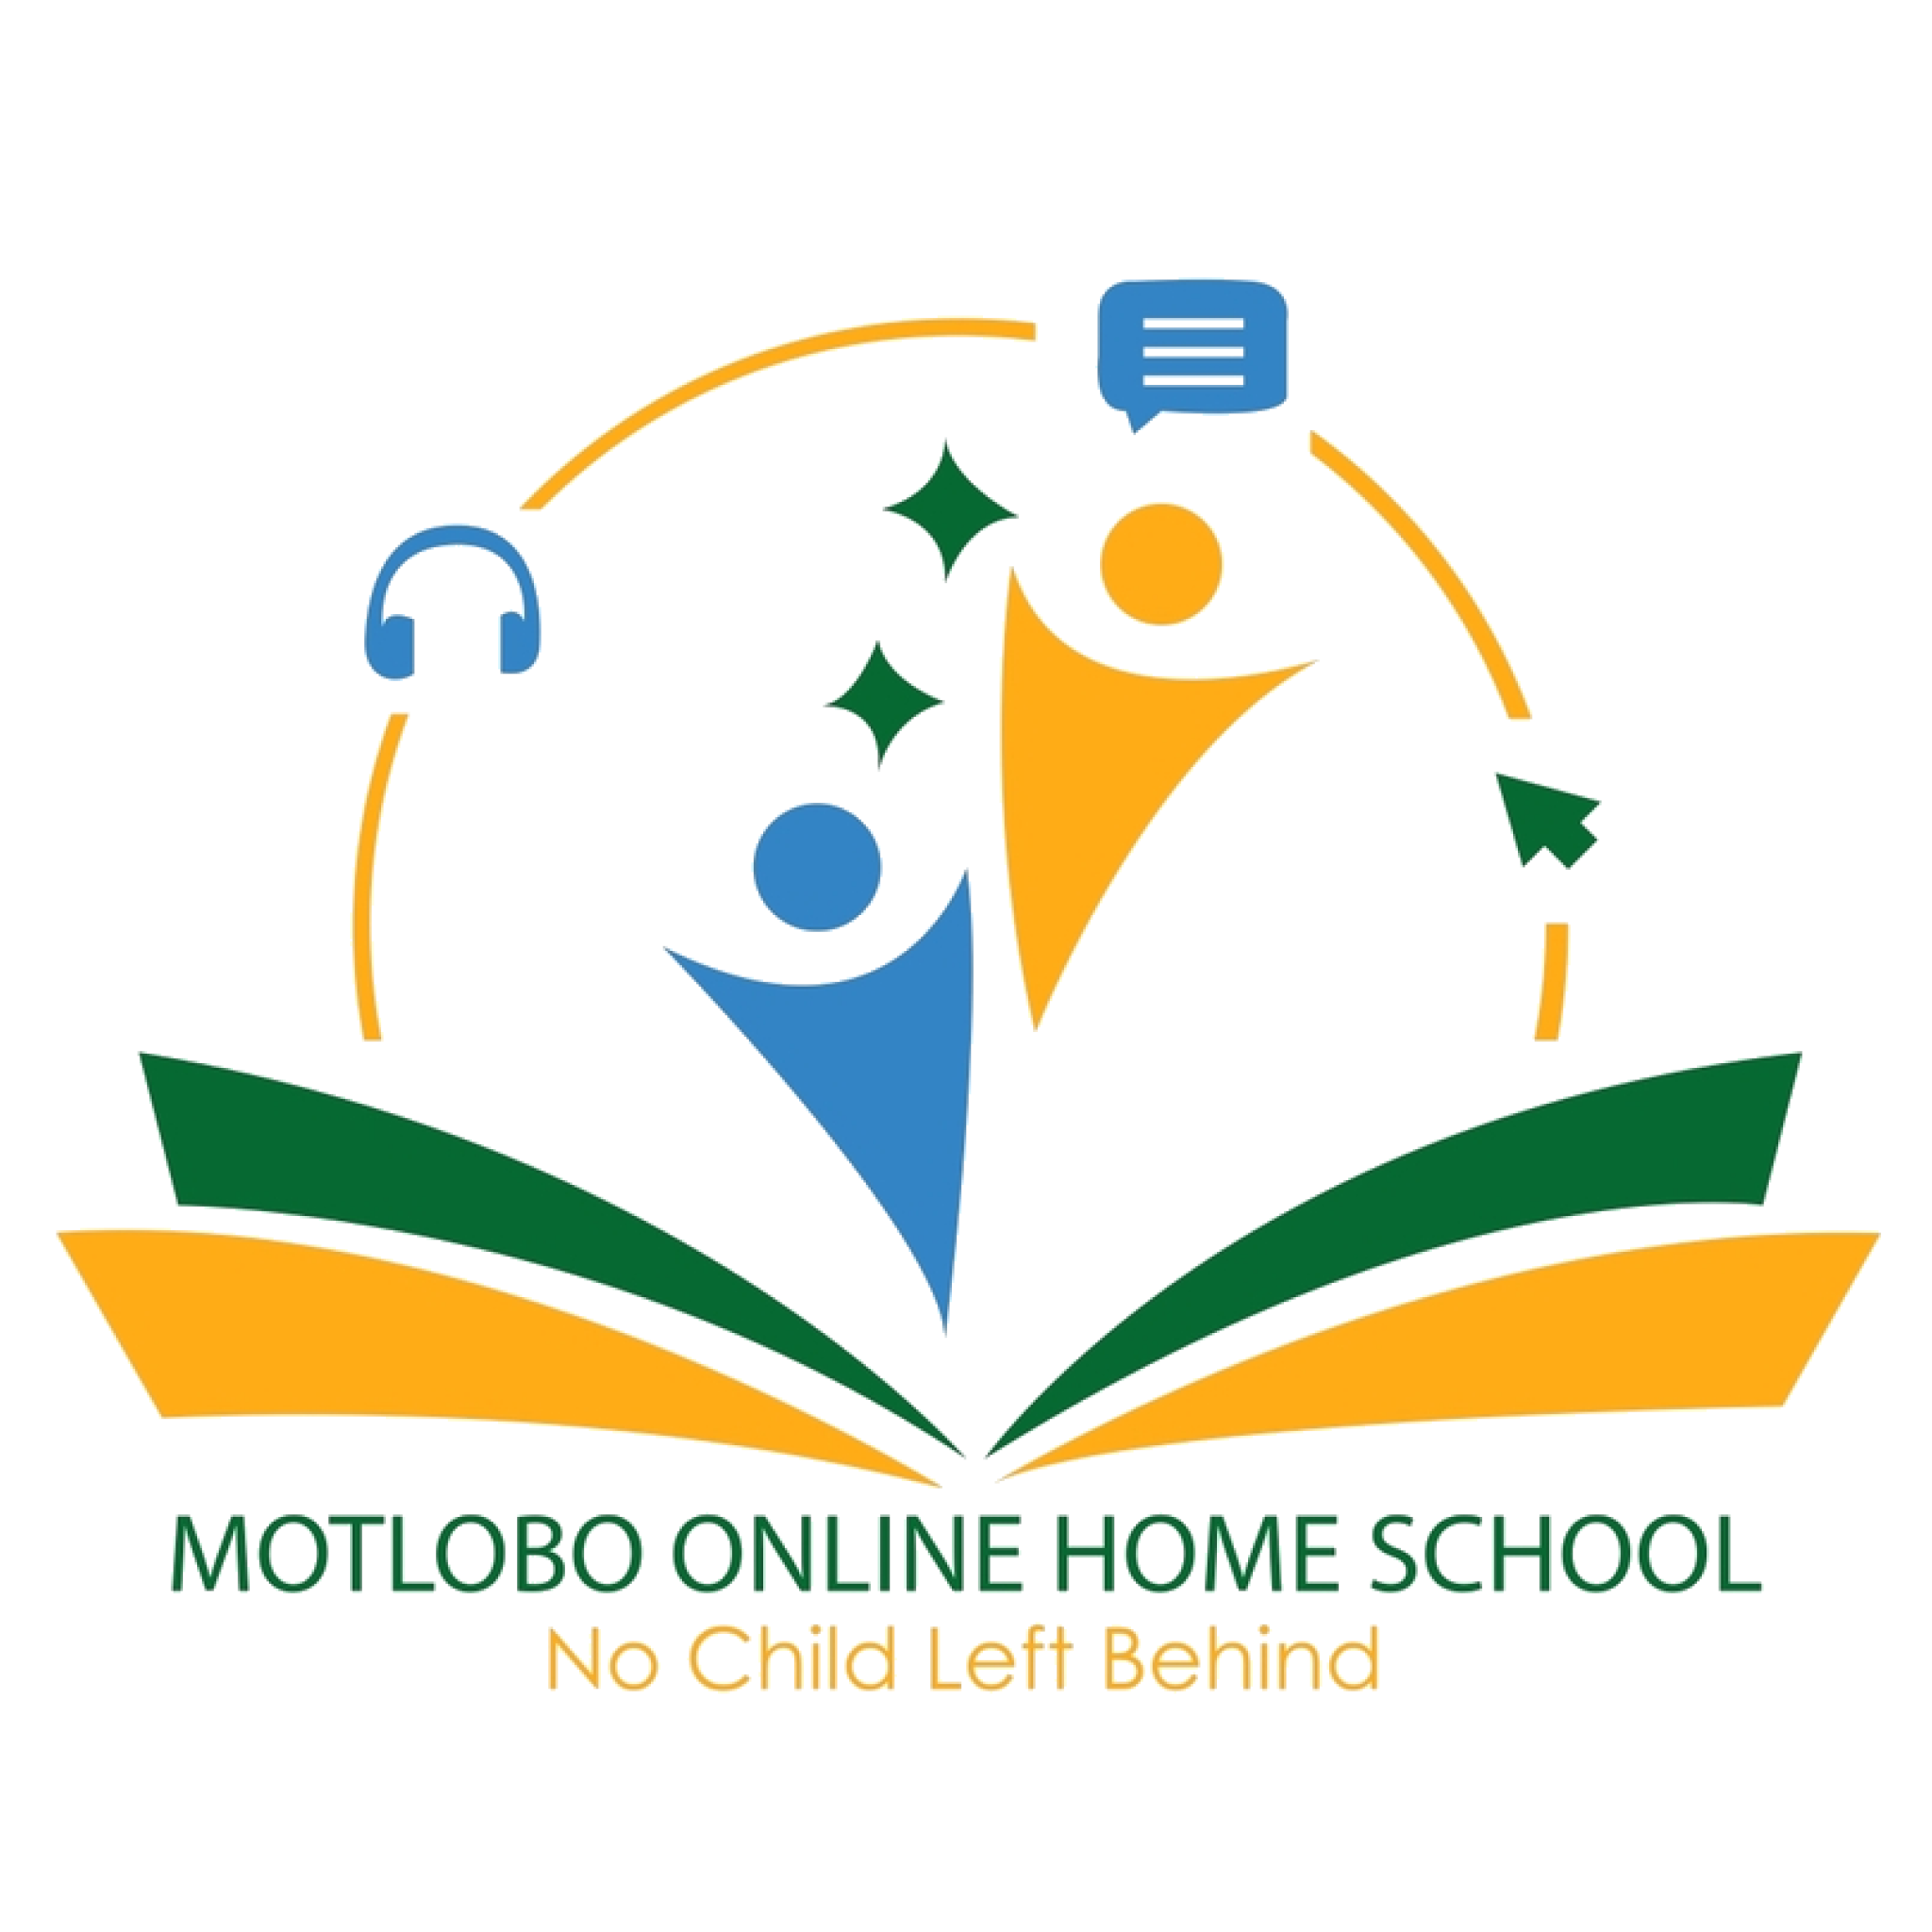 Motlobo Online Home School